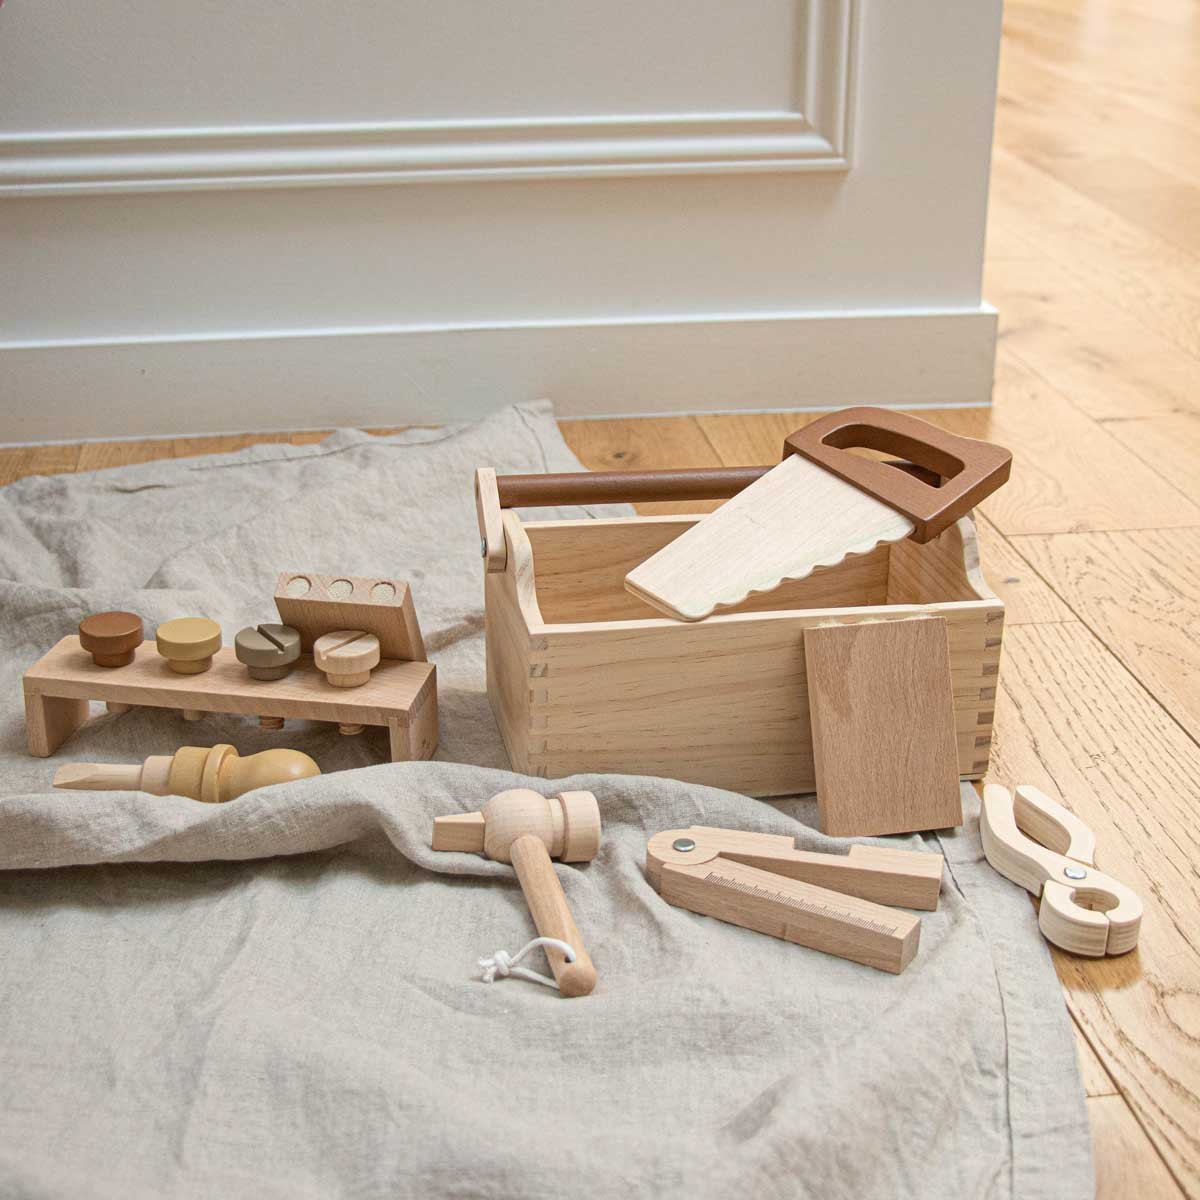 Caisse boite à outils en bois Jeu d'imitation Enfant 3 ans + - Un